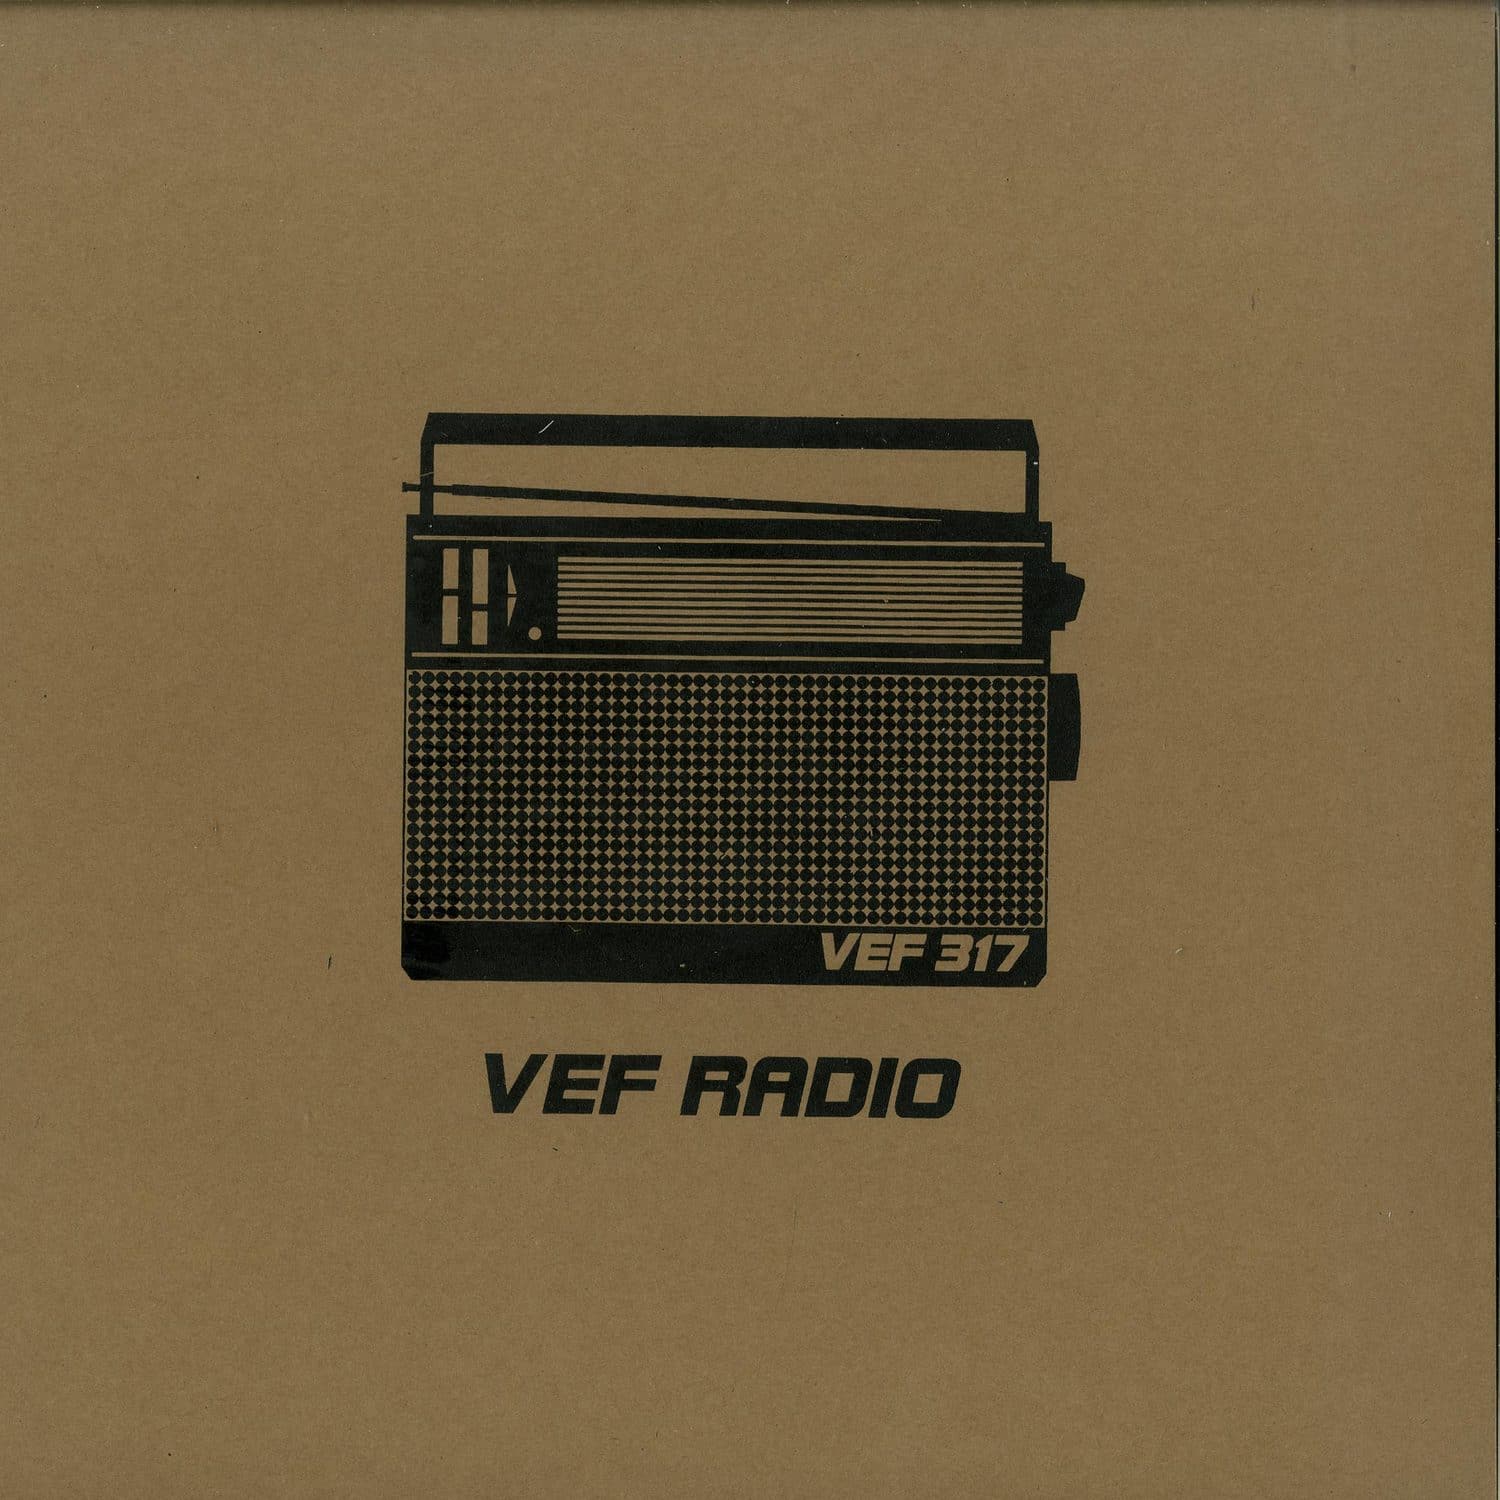 VEF 317 - VEF RADIO